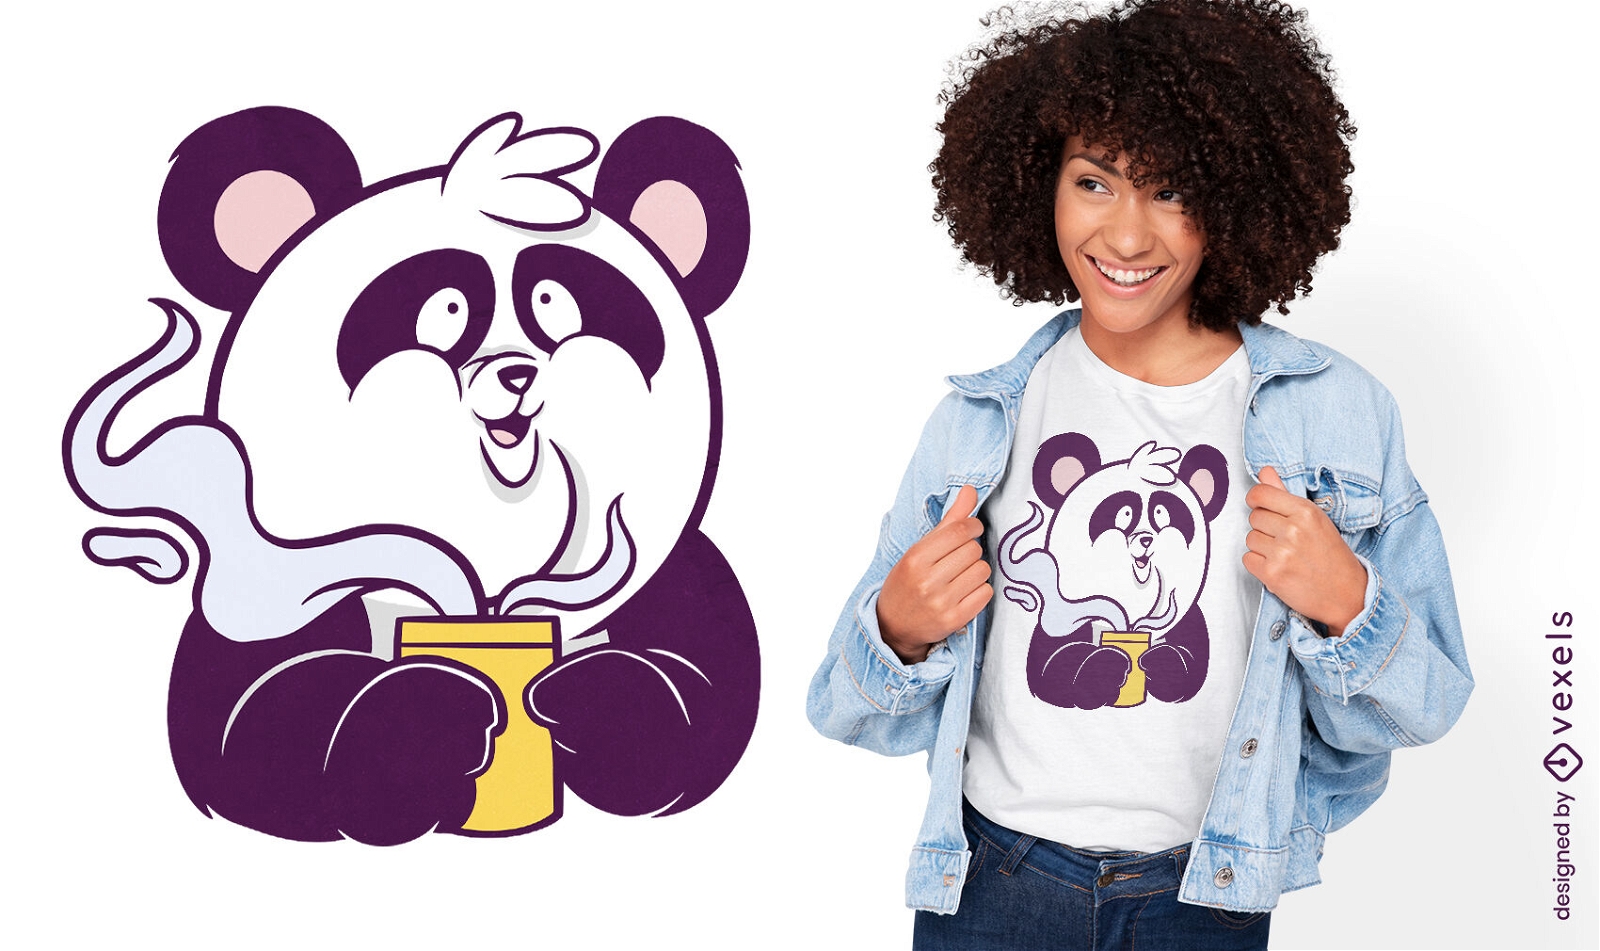 Panda-B?ren-Kaffee-Cartoon-T-Shirt-Design